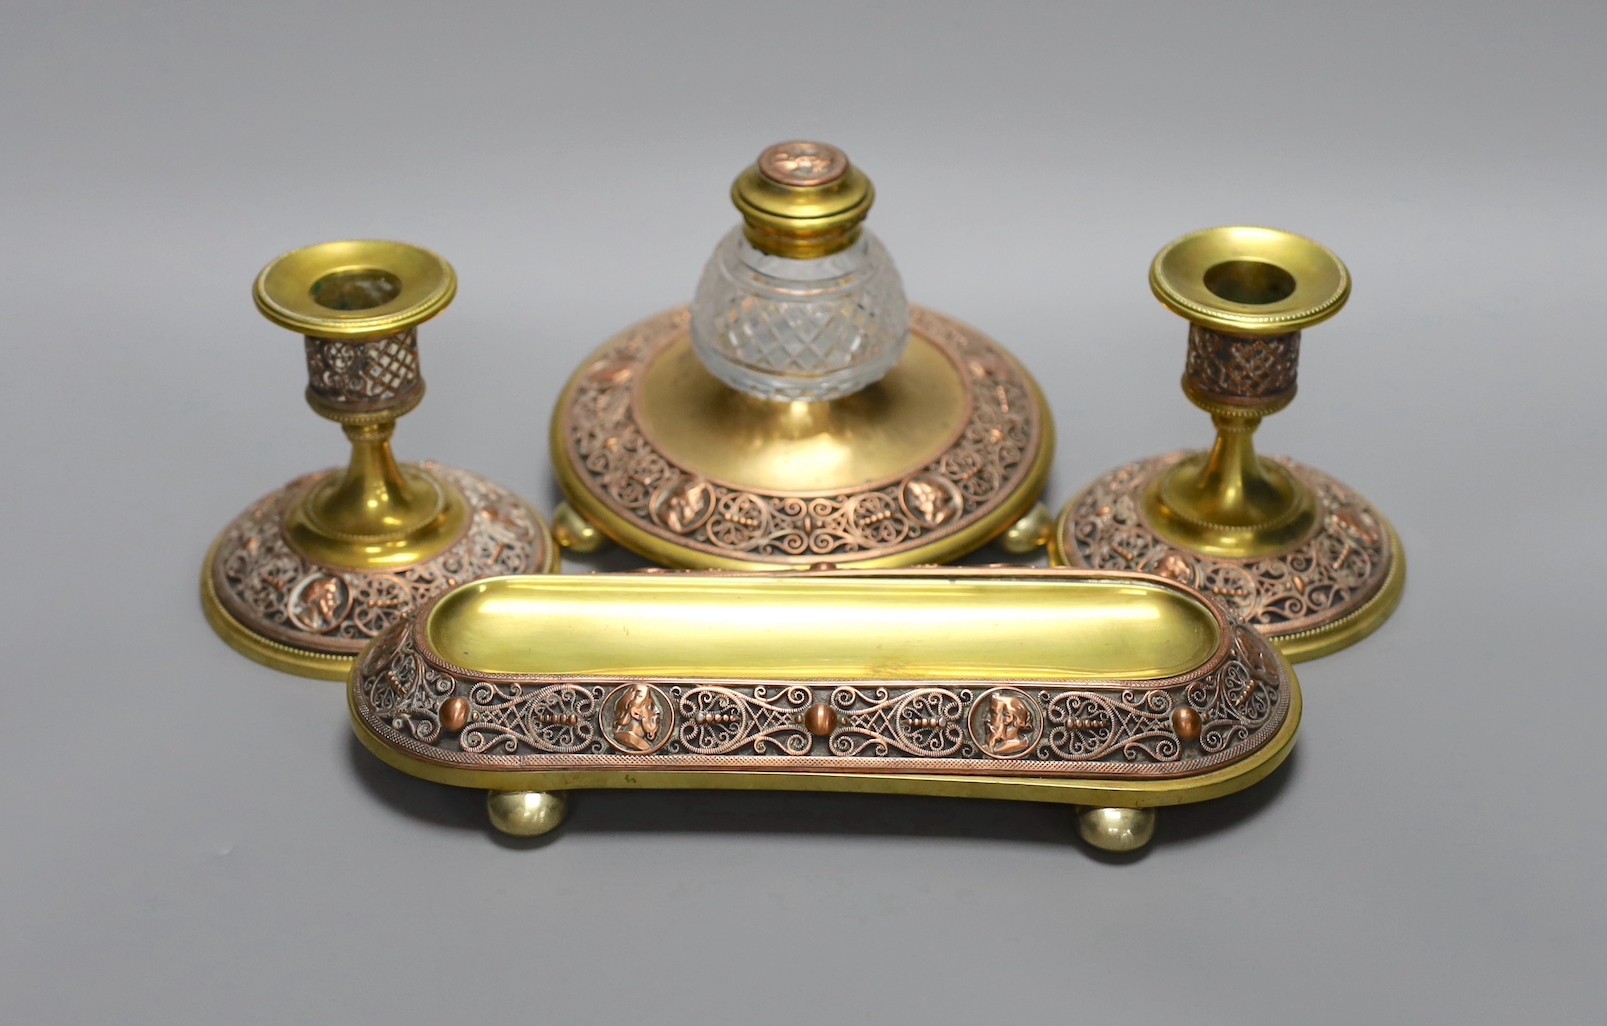 A 19th century brass and copper filigree desk set, 23cm